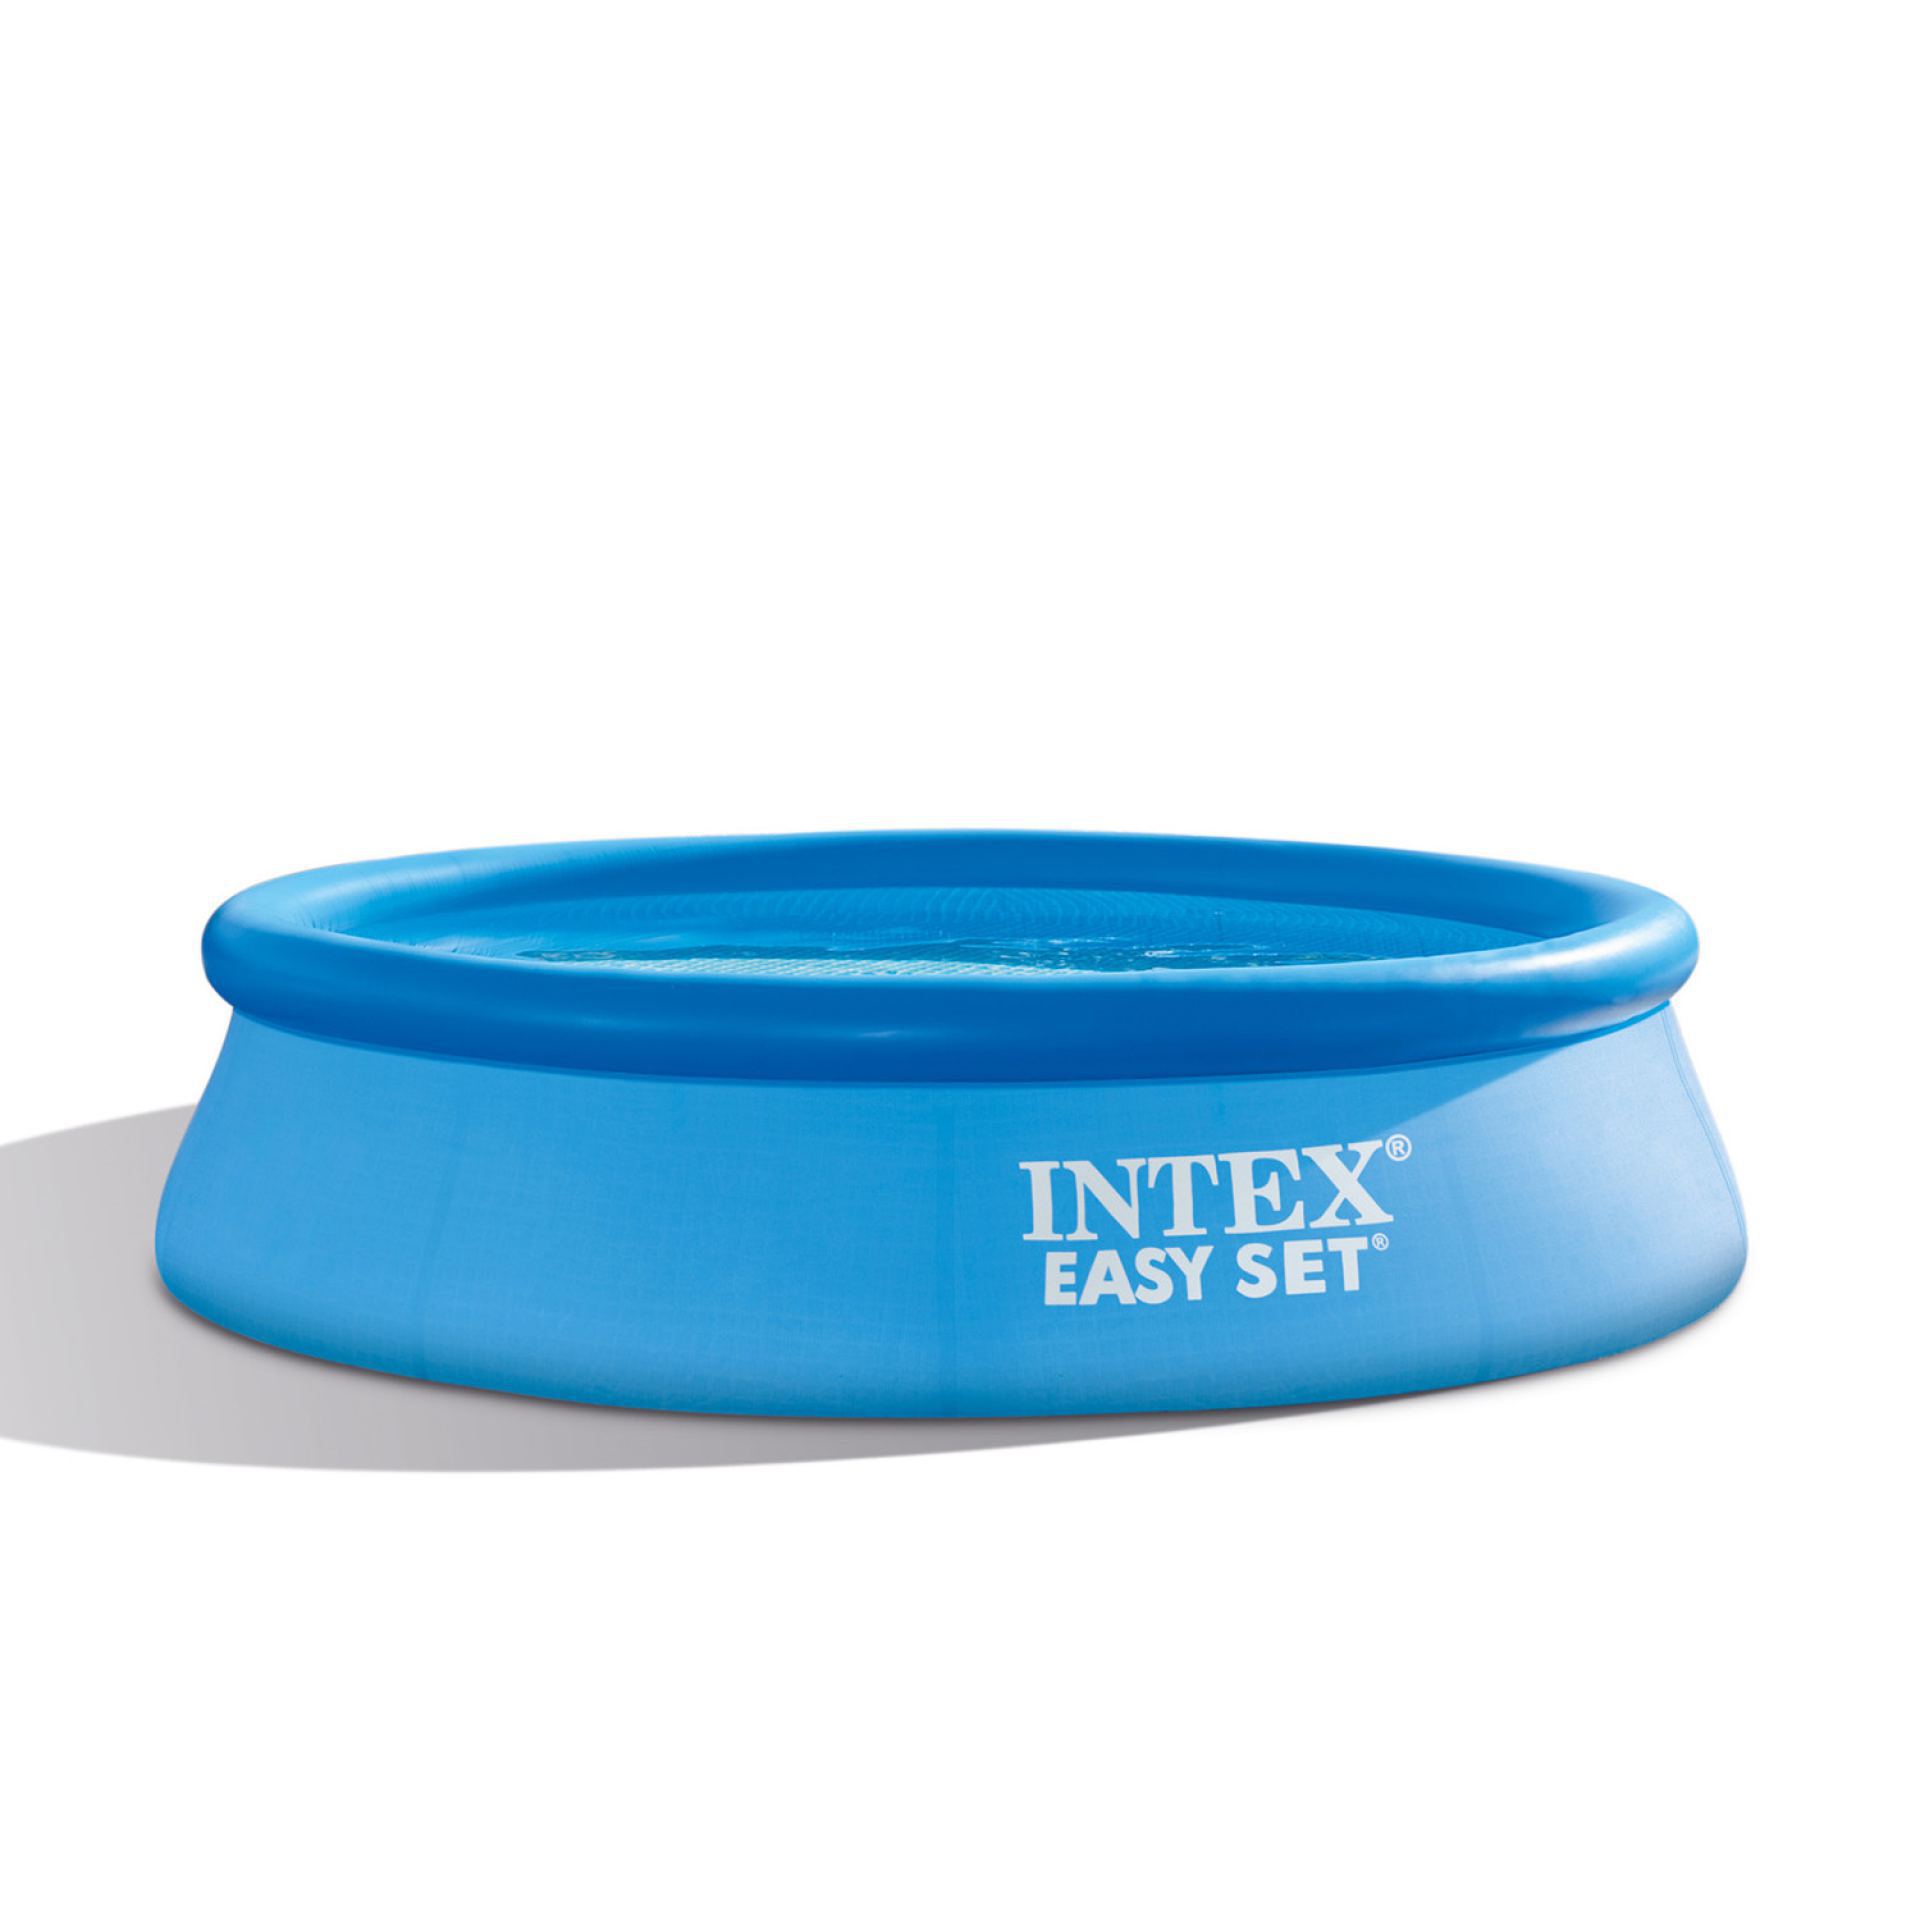 Intex easy set zwembad 305 x 76cm